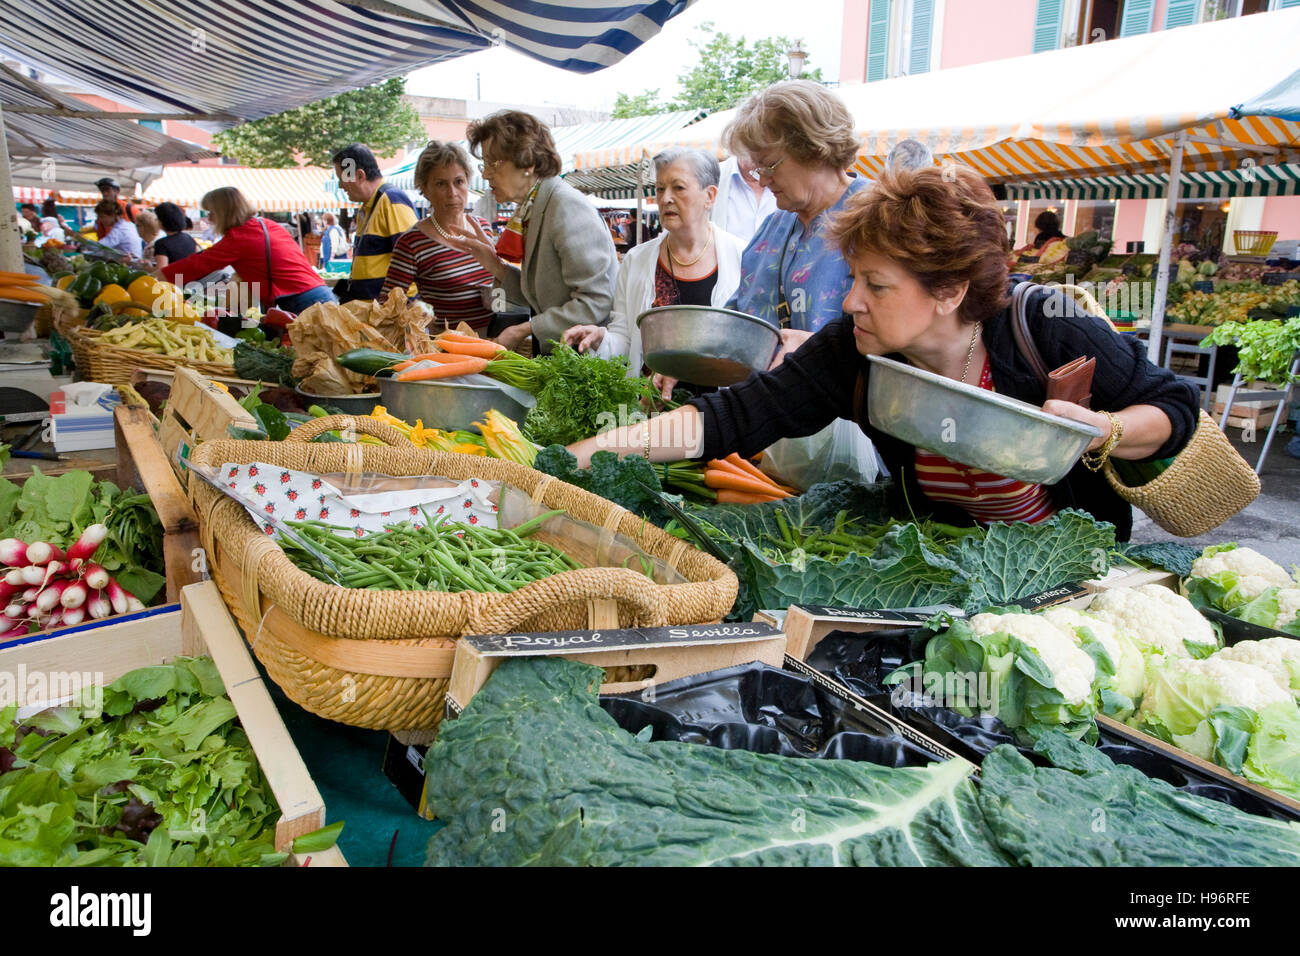 Obst und Gemüse Markt, Cours Saleya, wöchentlicher Markt, Nizza, Côte d '  Azur, Frankreich Stockfotografie - Alamy